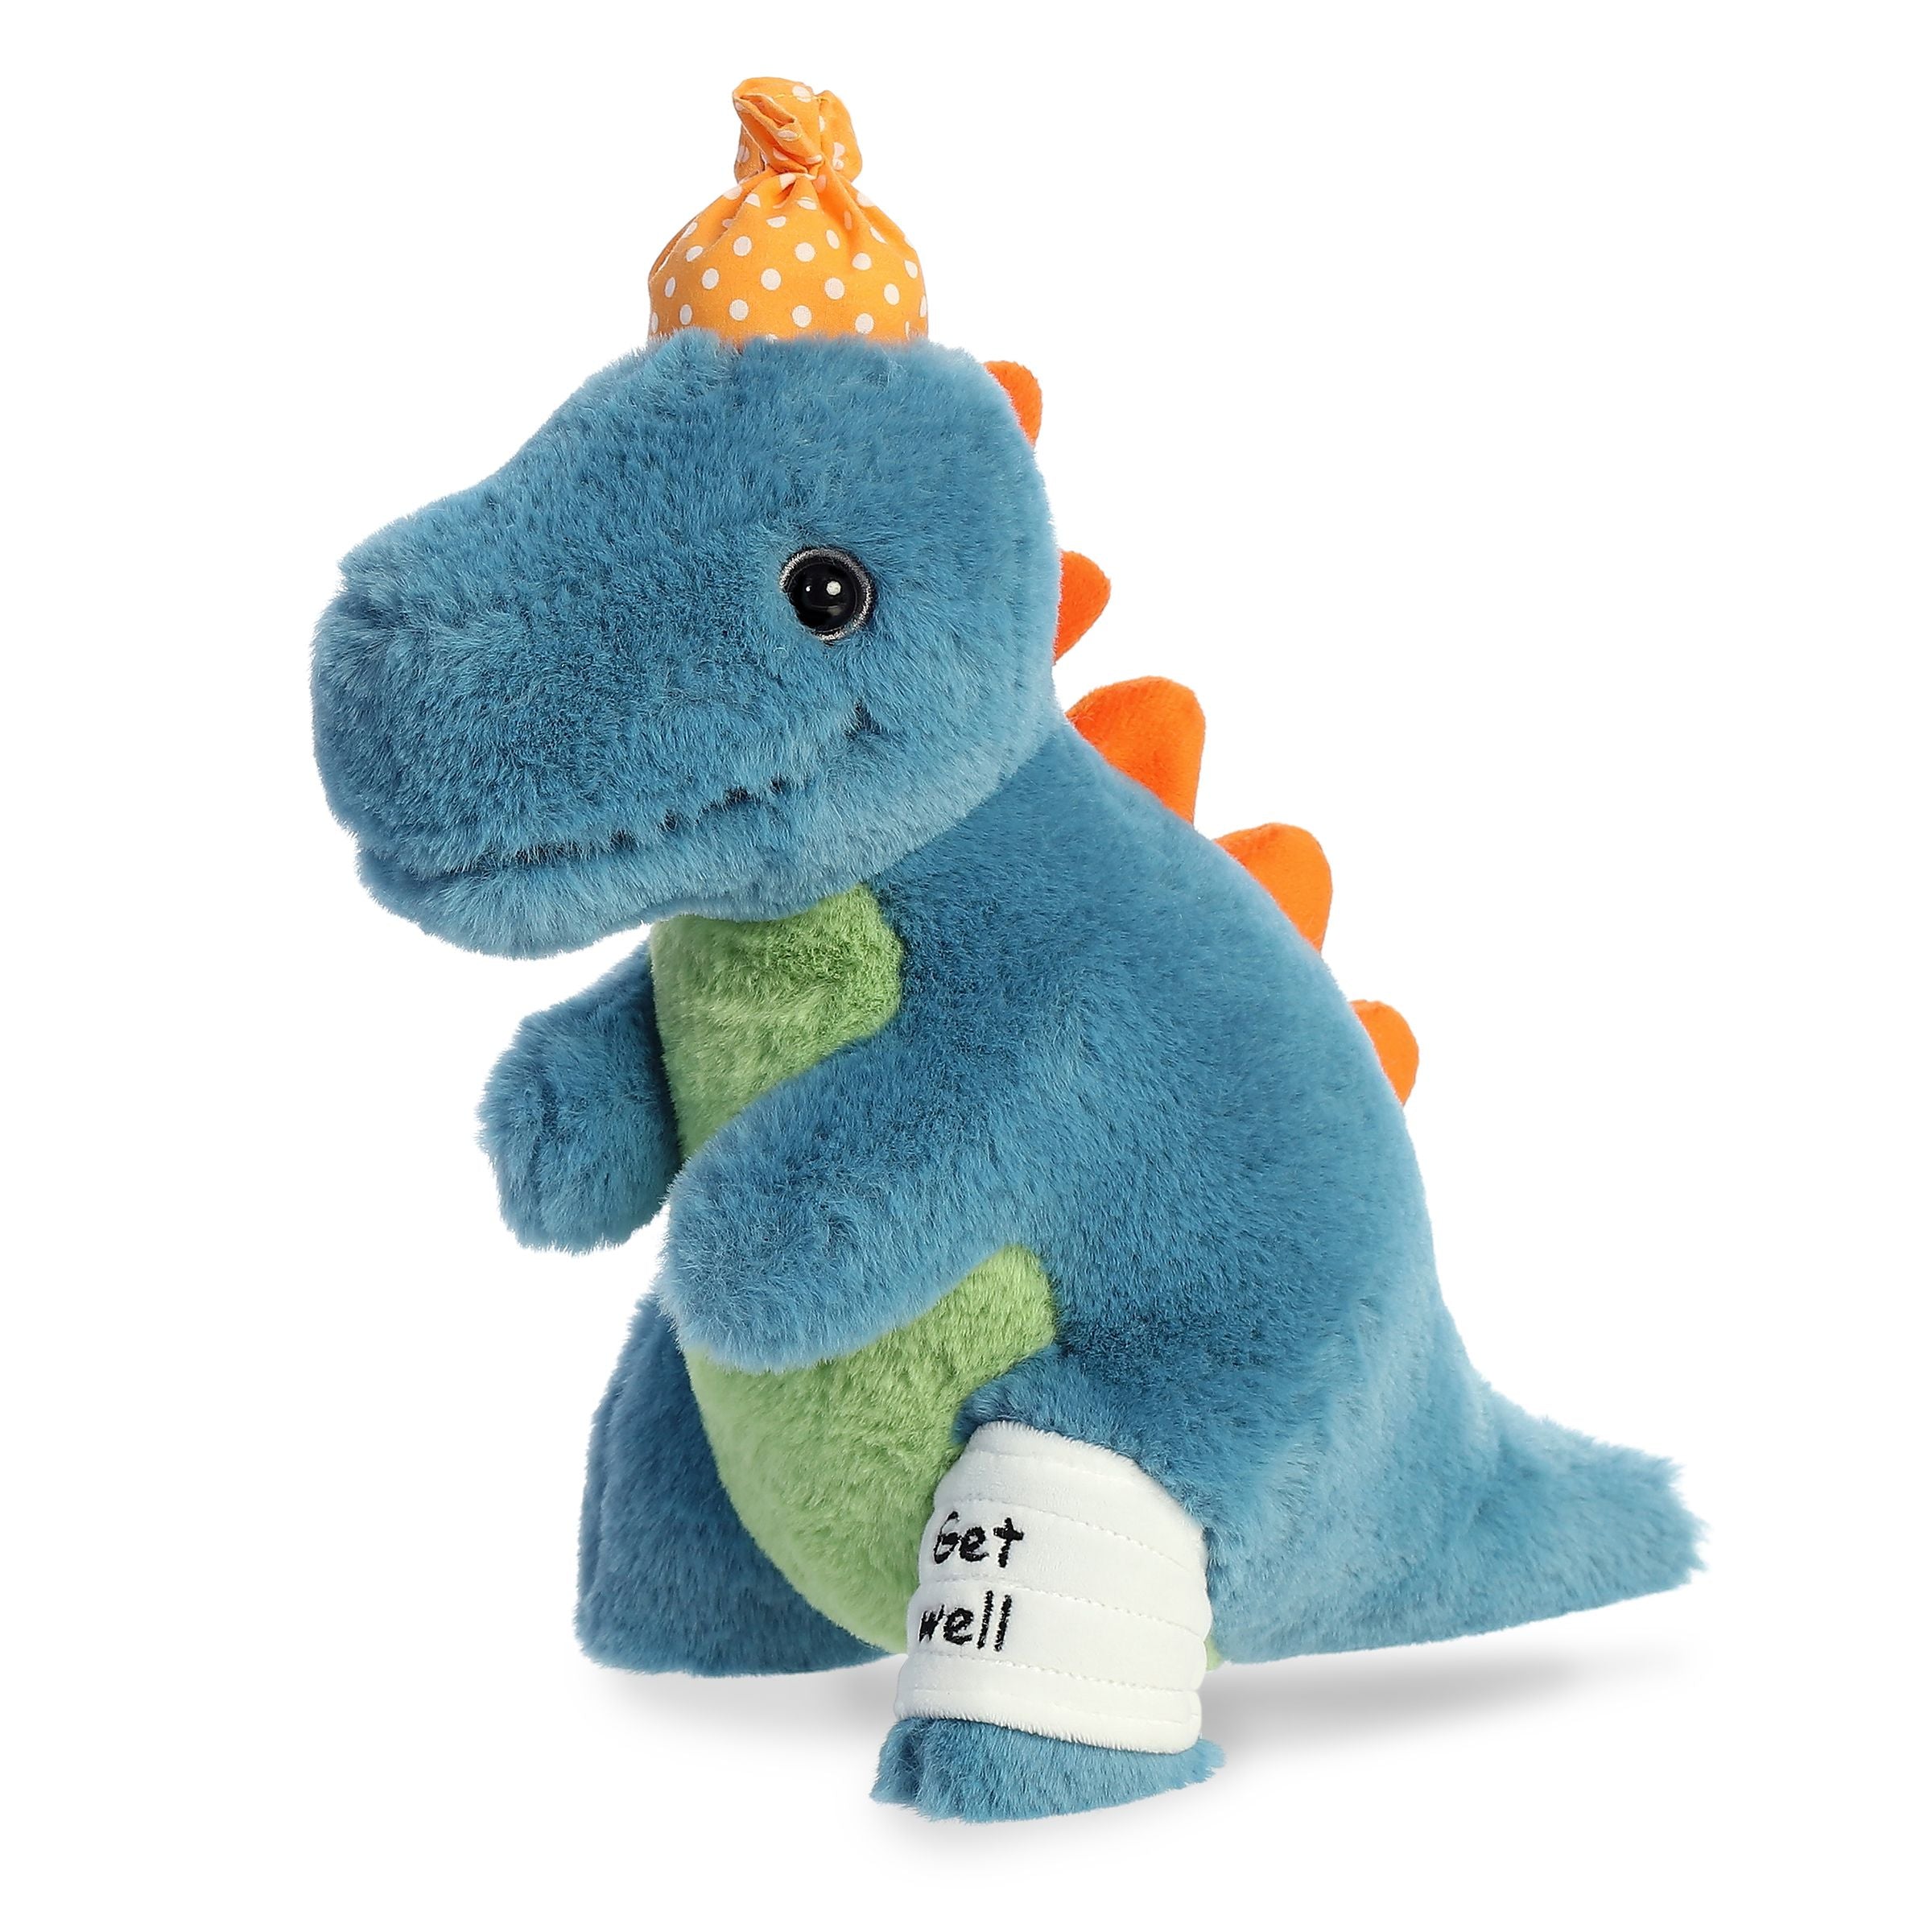 15 Dinosaur Stuffed Animal | Dinosaur Plush Toy | Cute Dinosaur Plush | Buddy Stuffed Dinosaur | Vermont Teddy Bear